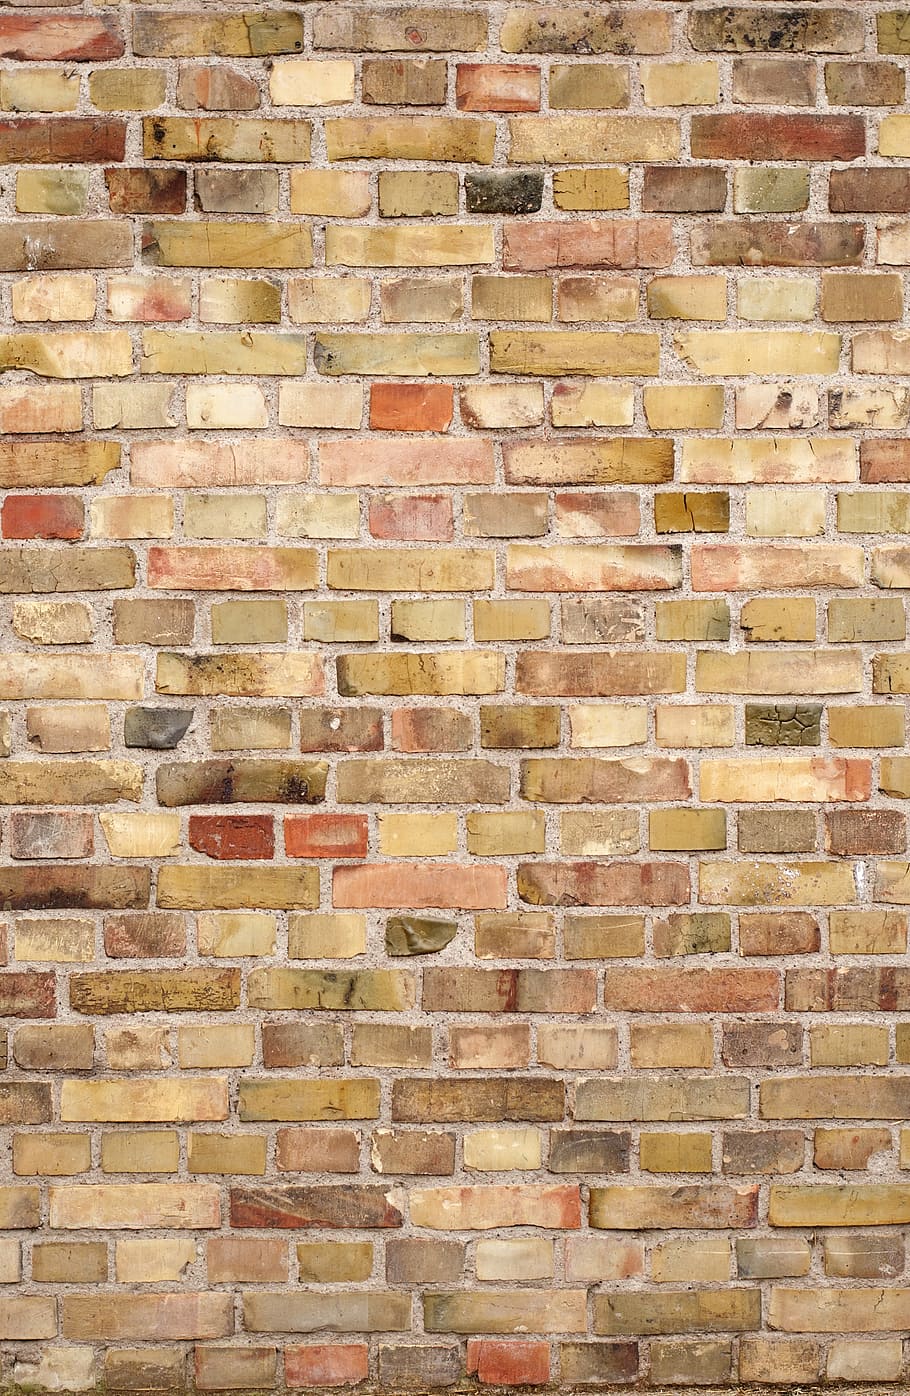 brown, bricked wall illustration, brick, wall, background, brick wall, brick wall background, aged, texture, dirty